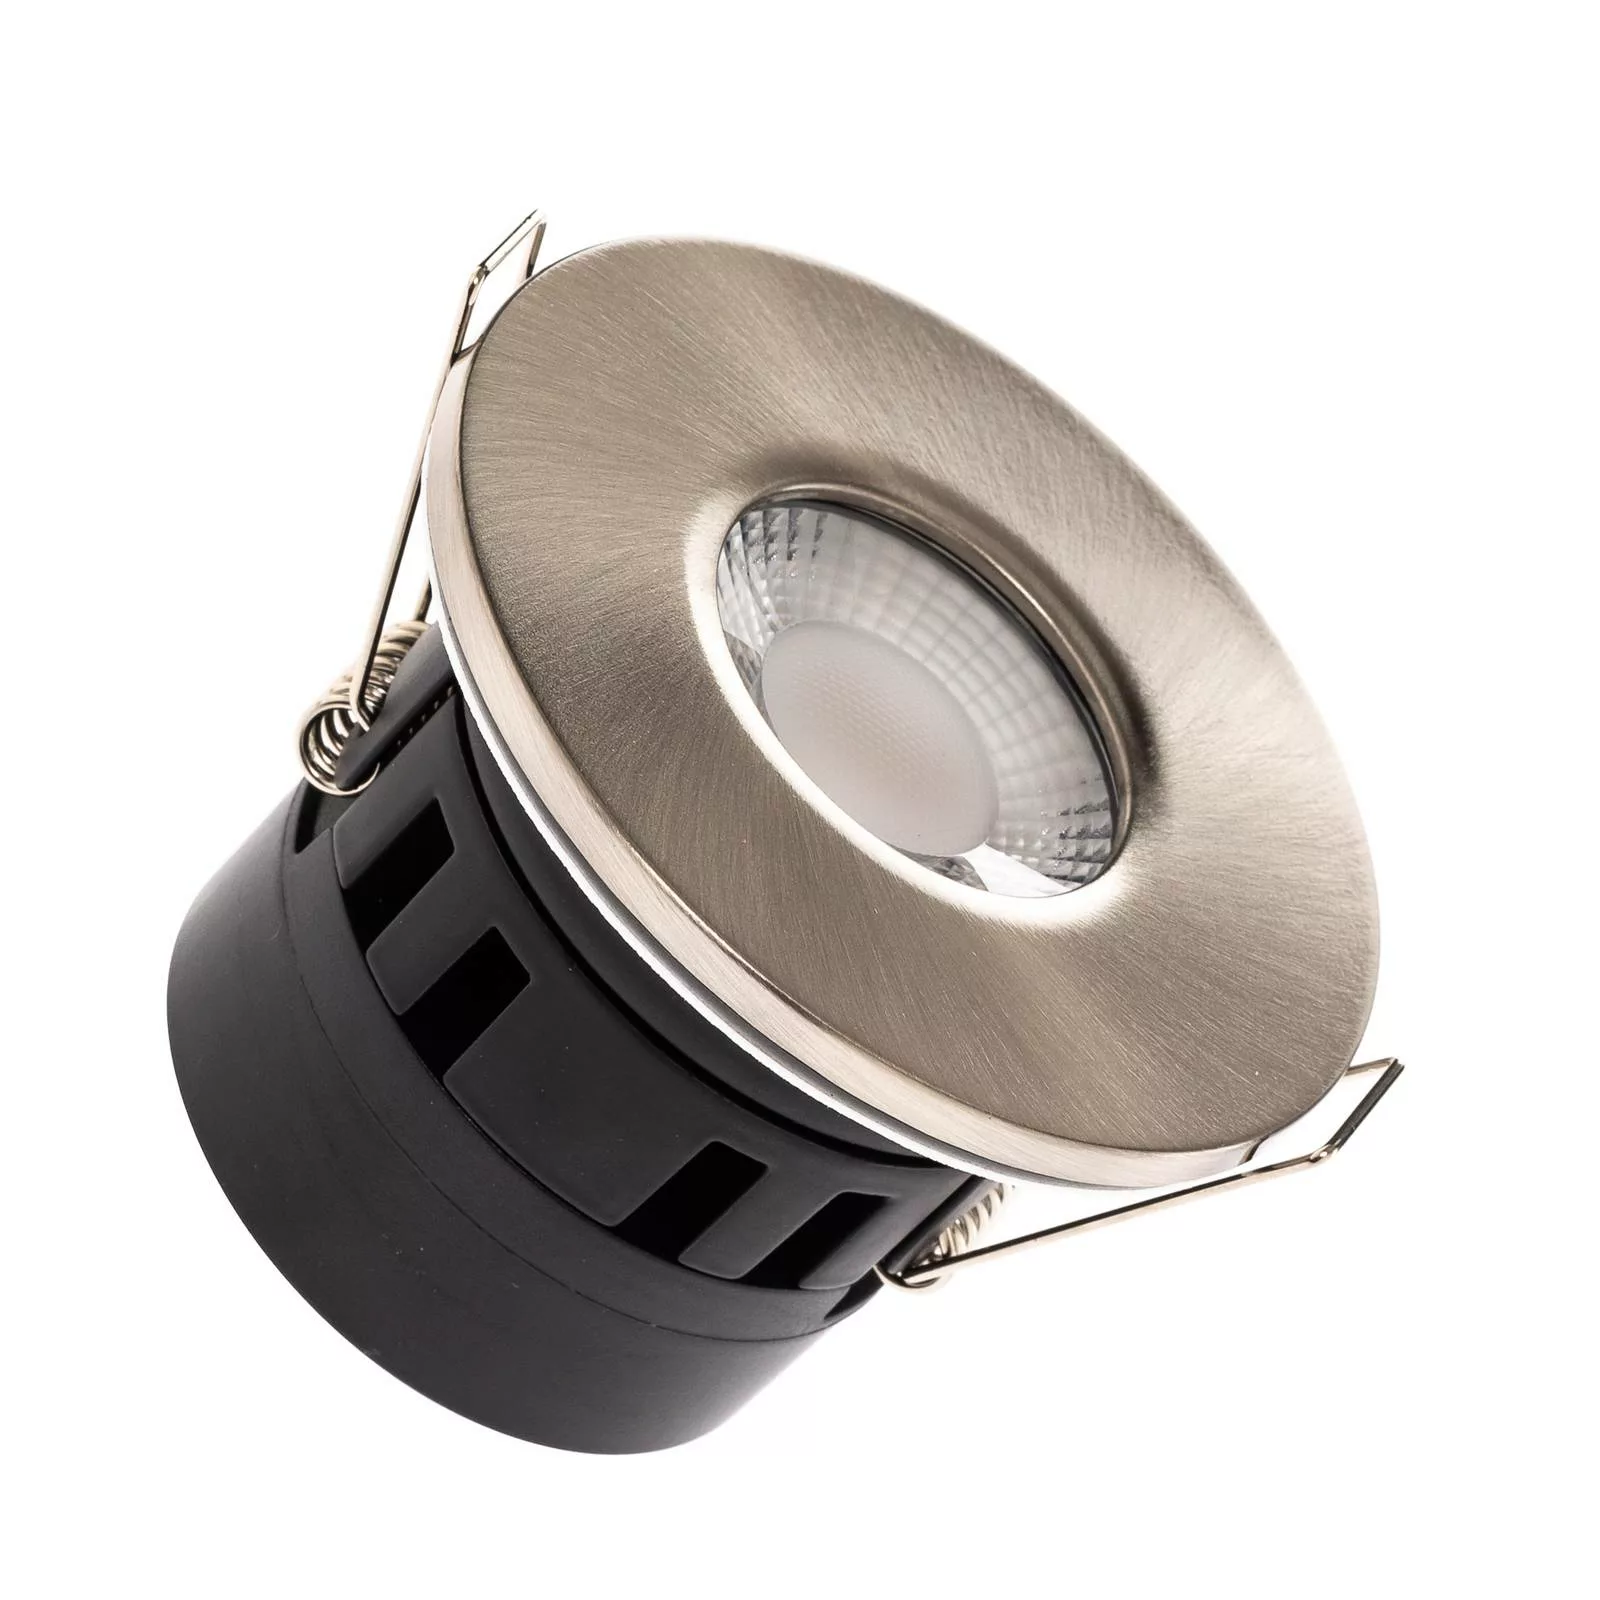 Arcchio Tempurino LED-Einbaustrahler, 6 cm, 36° günstig online kaufen